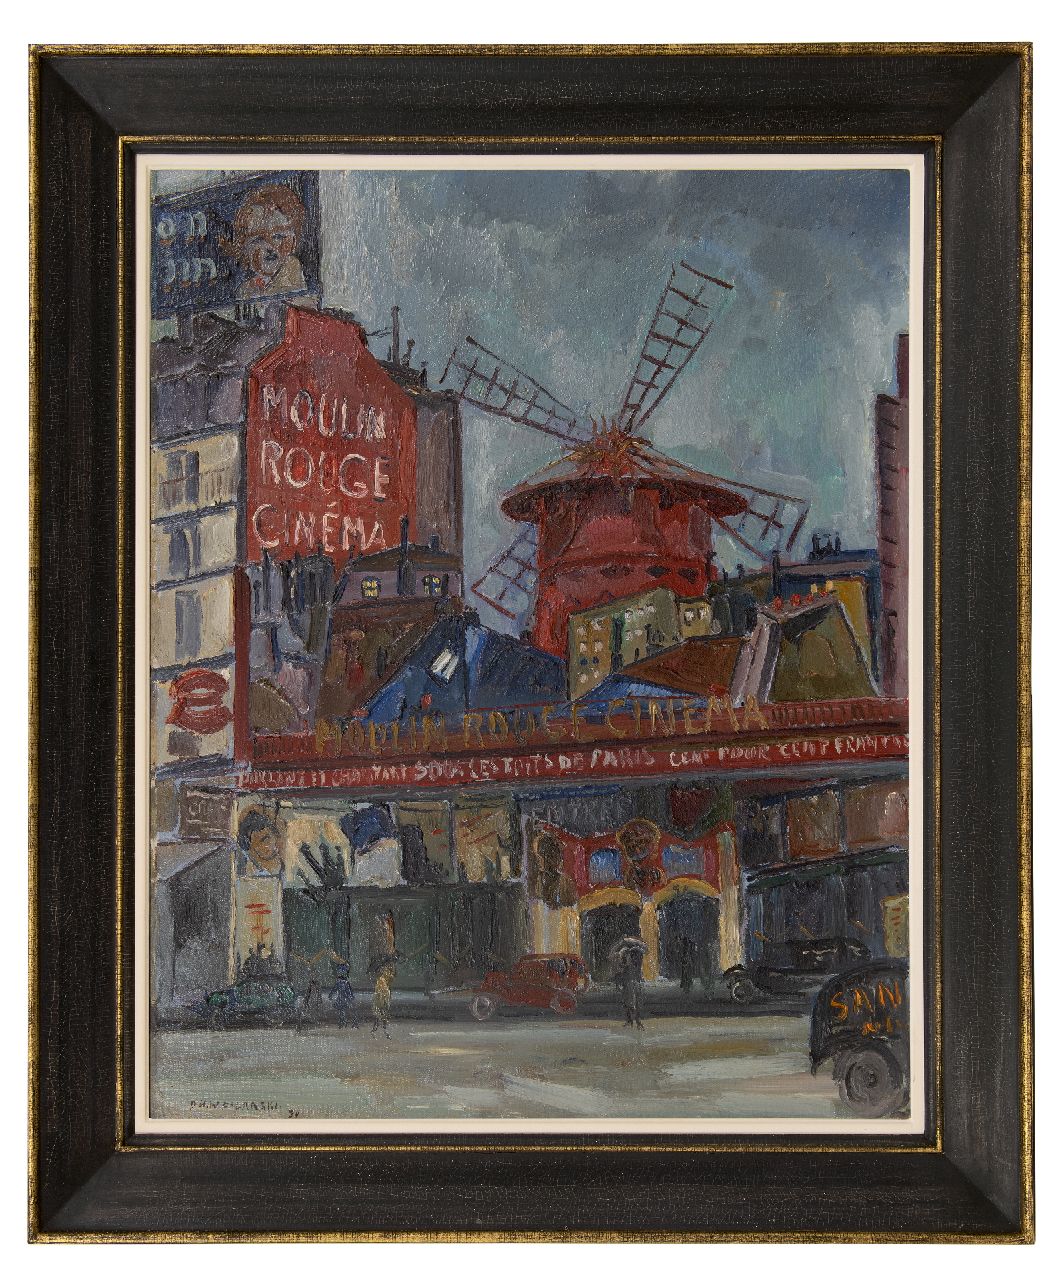 Filarski D.H.W.  | 'Dirk' Herman Willem Filarski | Schilderijen te koop aangeboden | Moulin Rouge, olieverf op doek 81,5 x 65,5 cm, gesigneerd linksonder en gedateerd '30